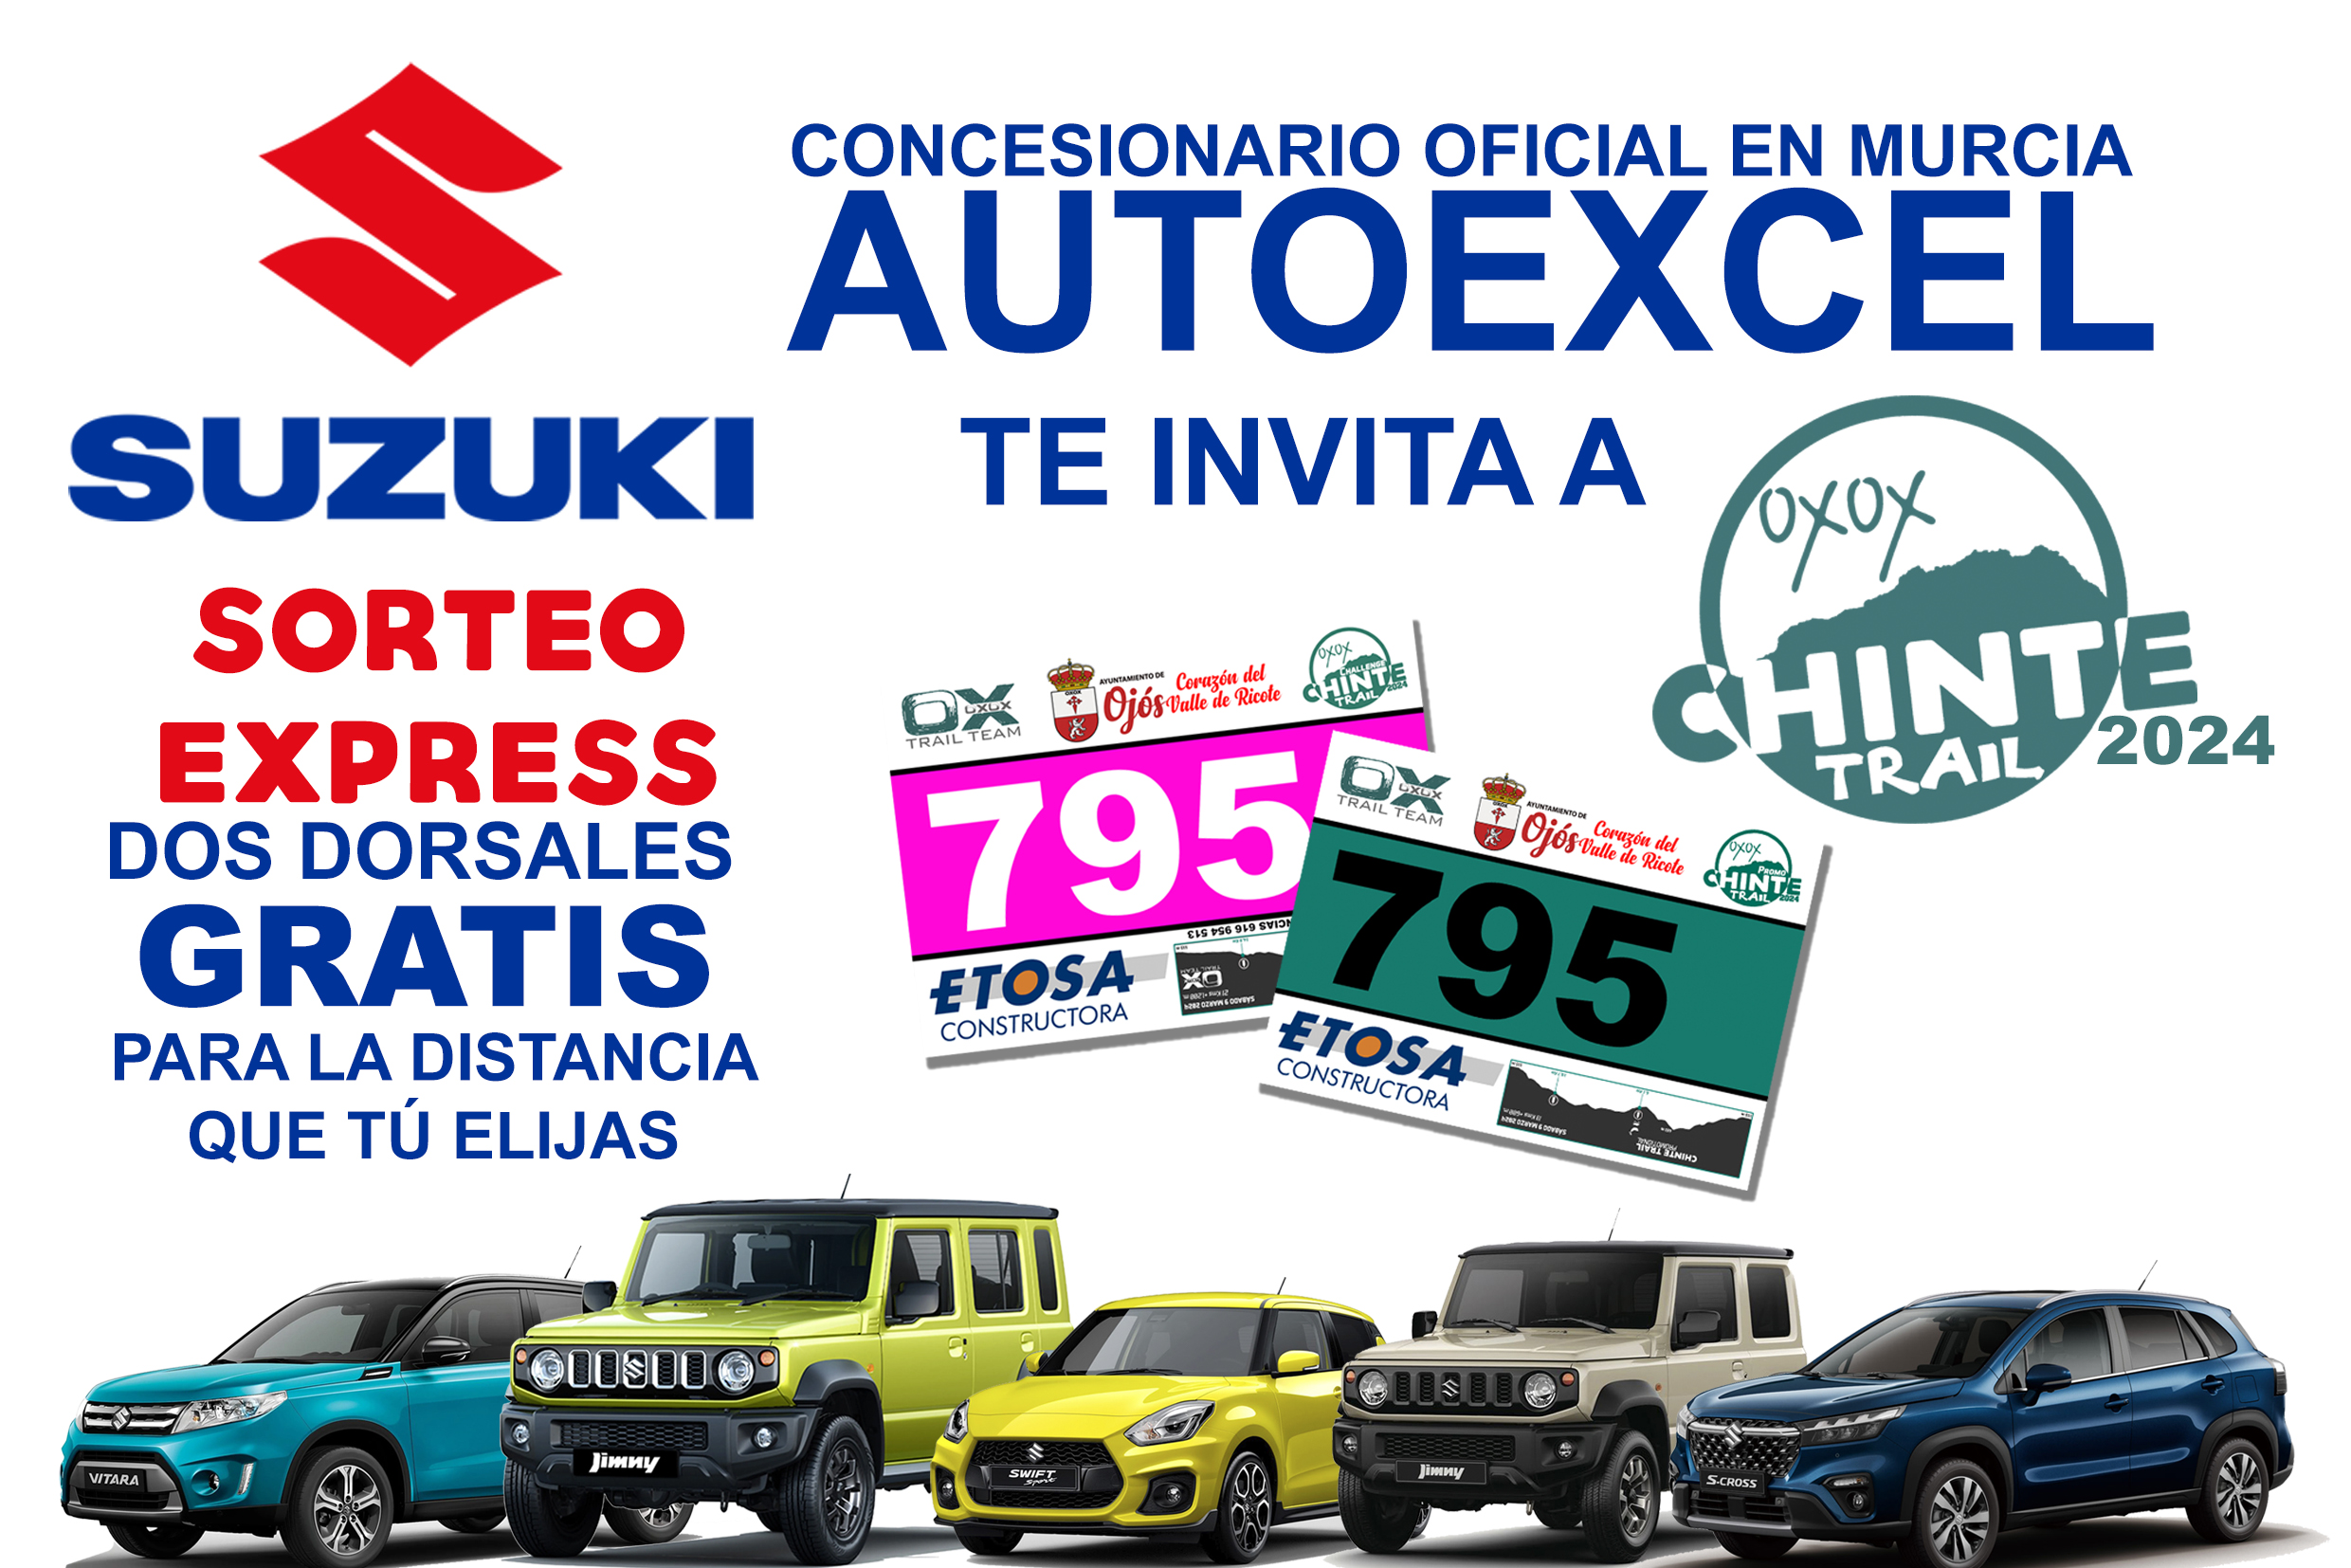 ¡Sorteo Express! Suzuki Autoexcel te invita GRATIS a Chinte Trail 2024